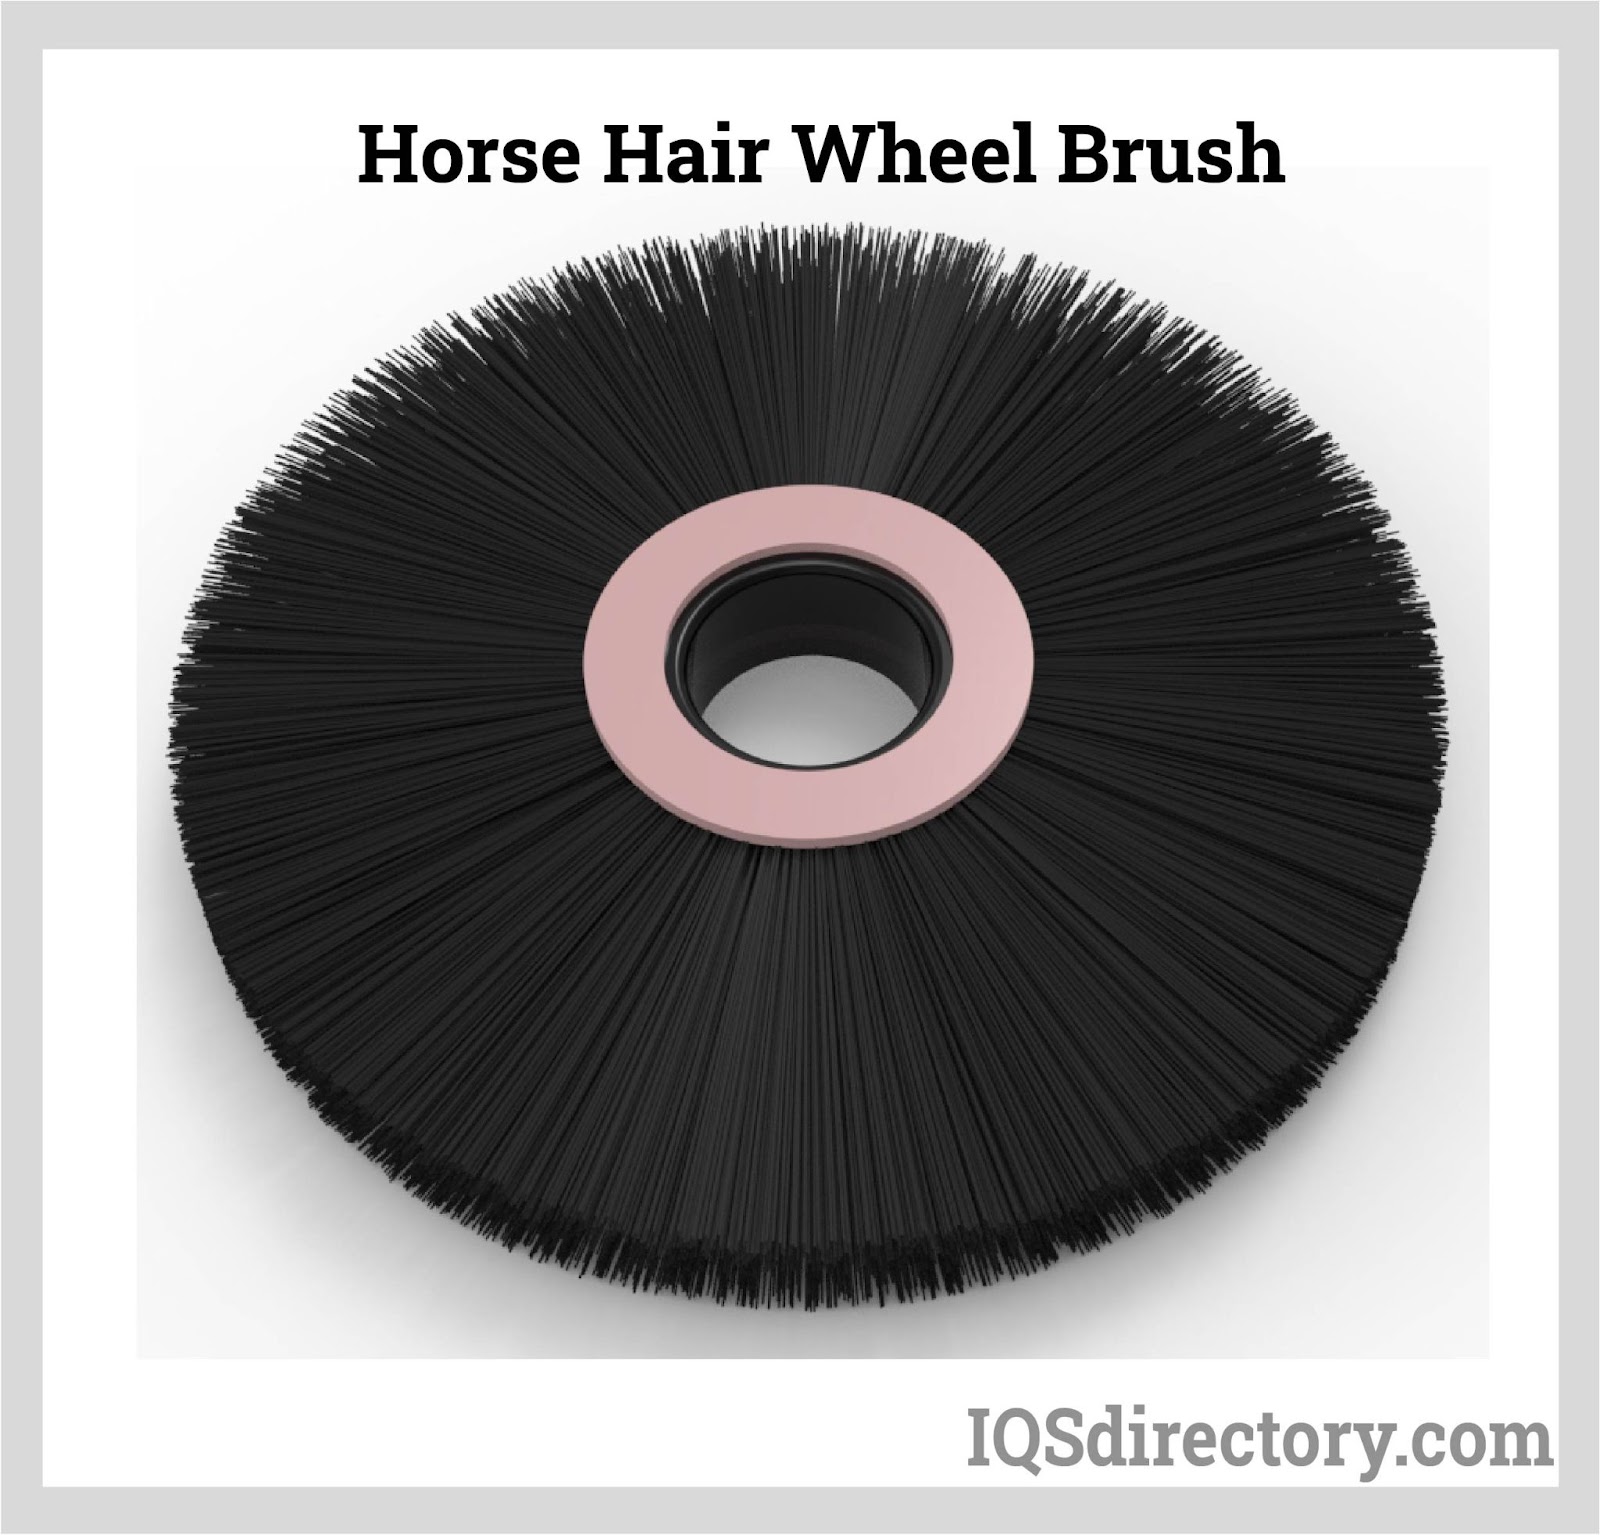 Horse Hair Wheel Brush